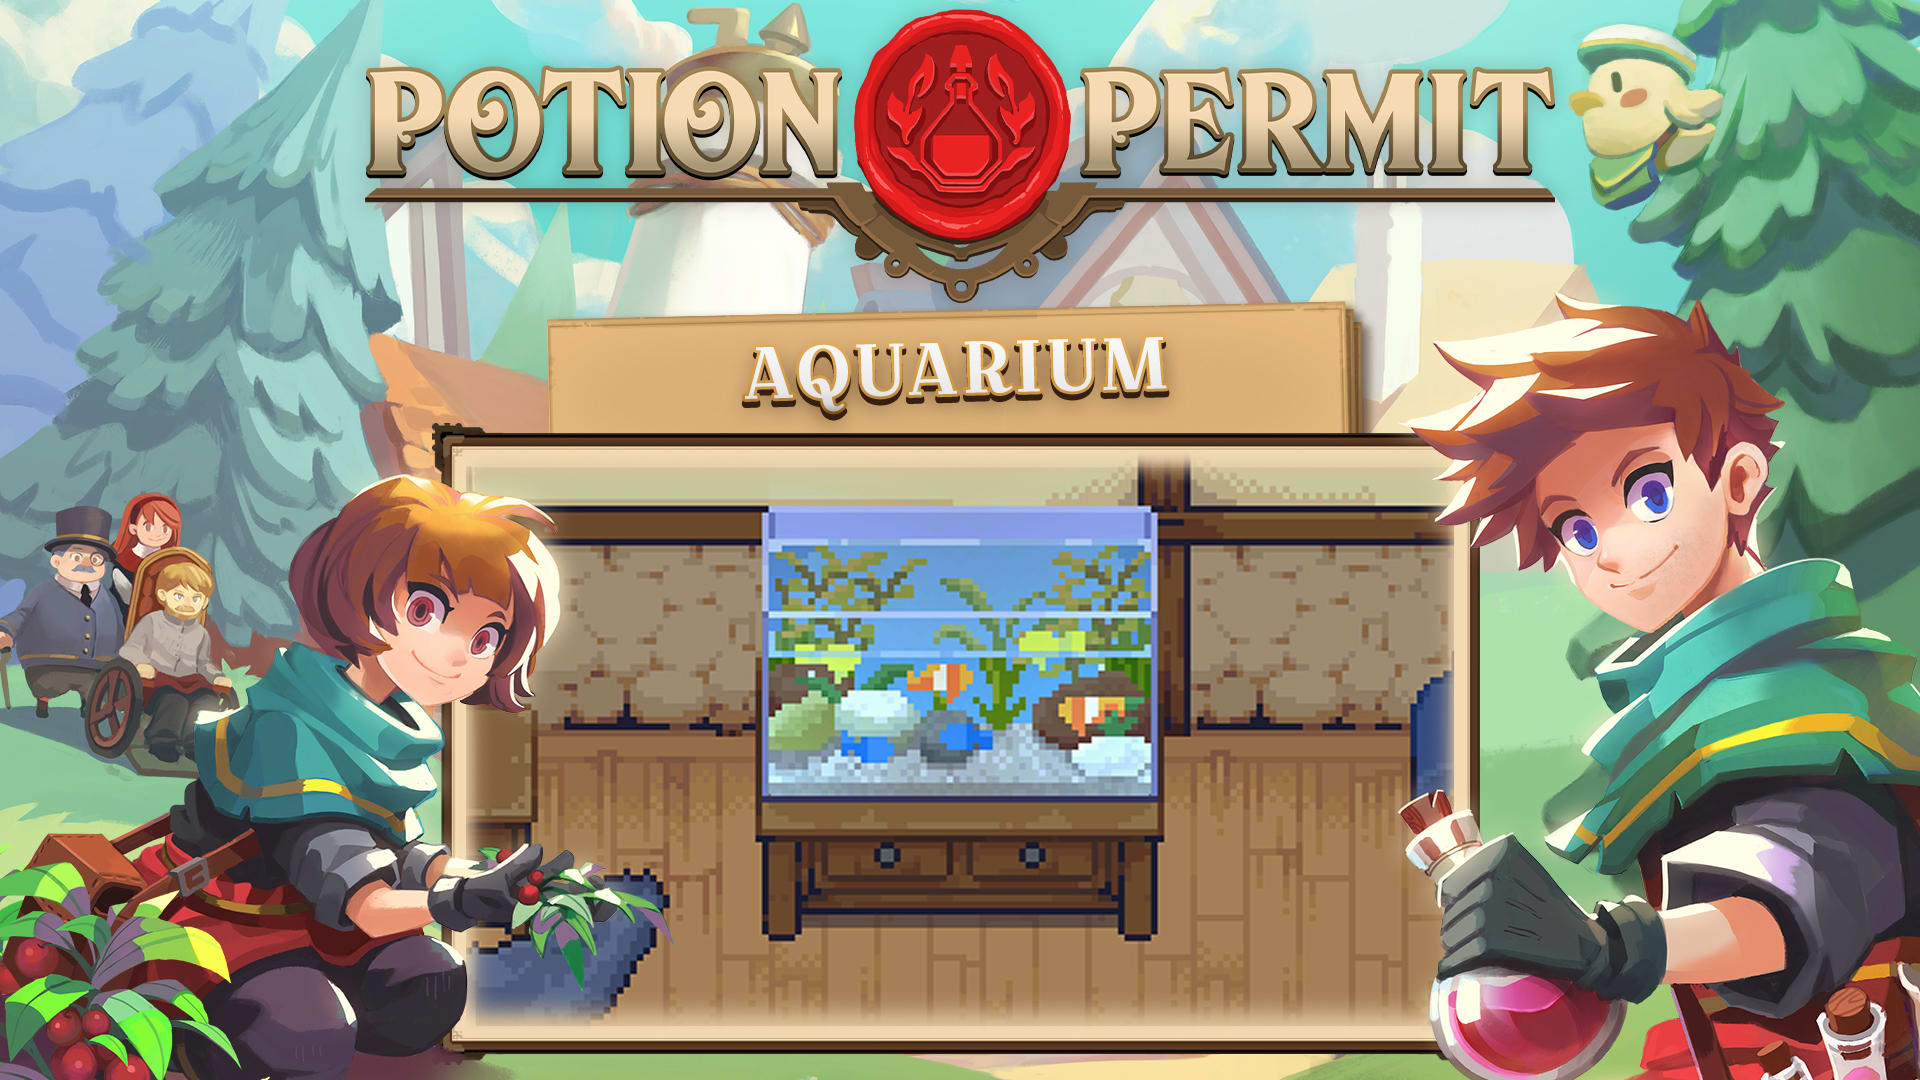   Potion Permit - Aquarium